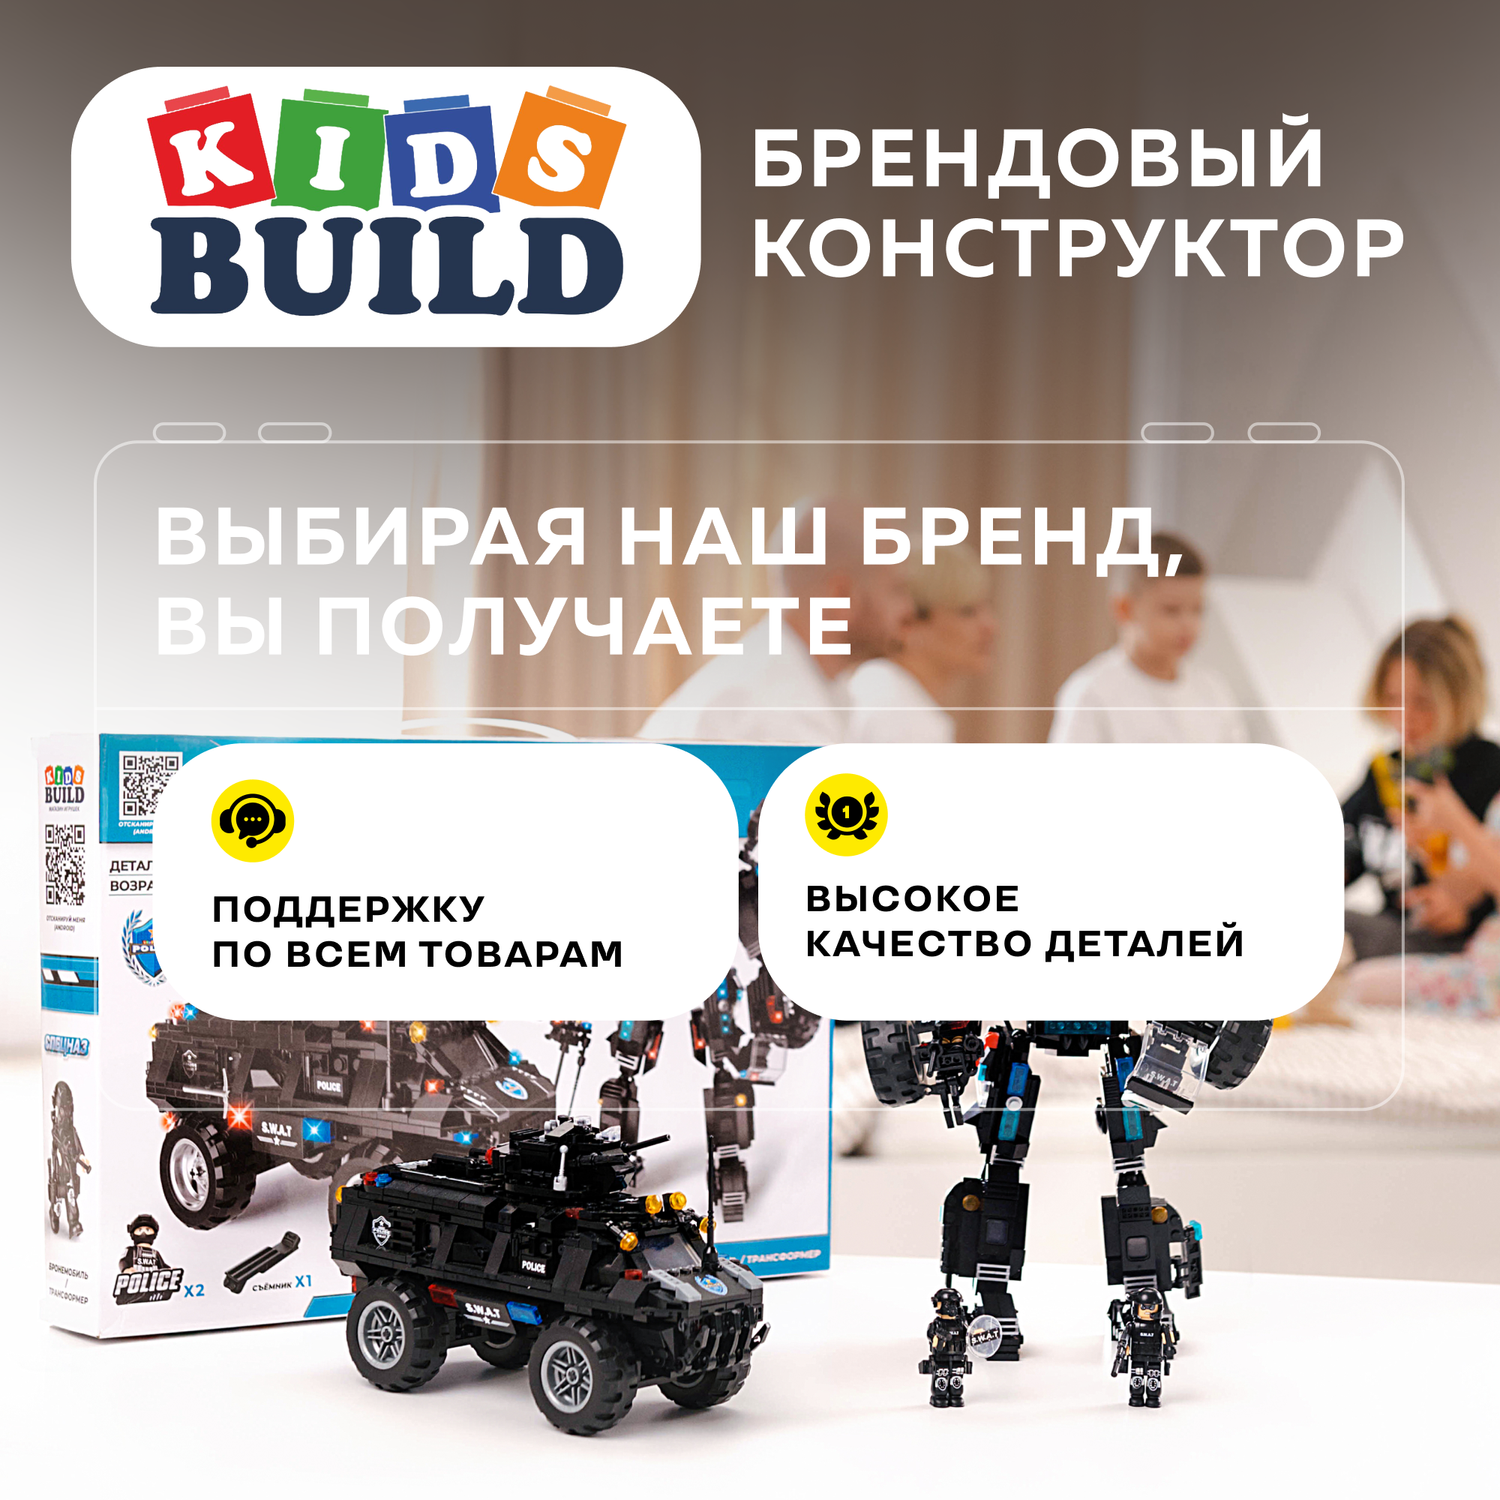 Конструктор Kids Build Военная техника робот трансформер и броневик 677 деталей - фото 15